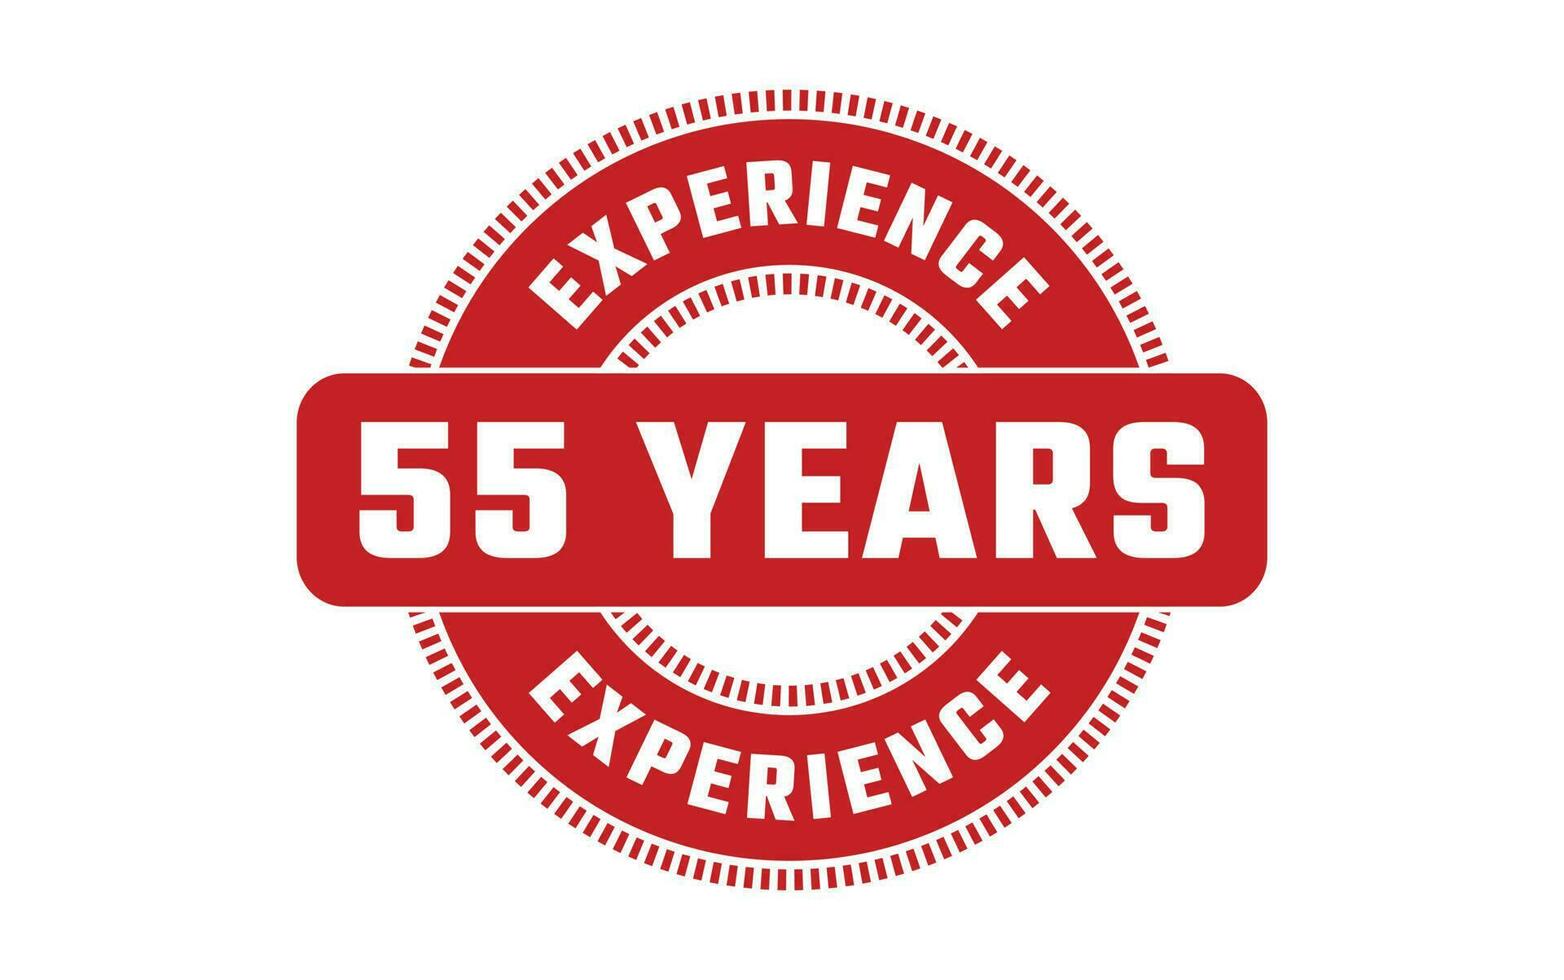 55 jaren ervaring rubber postzegel vector